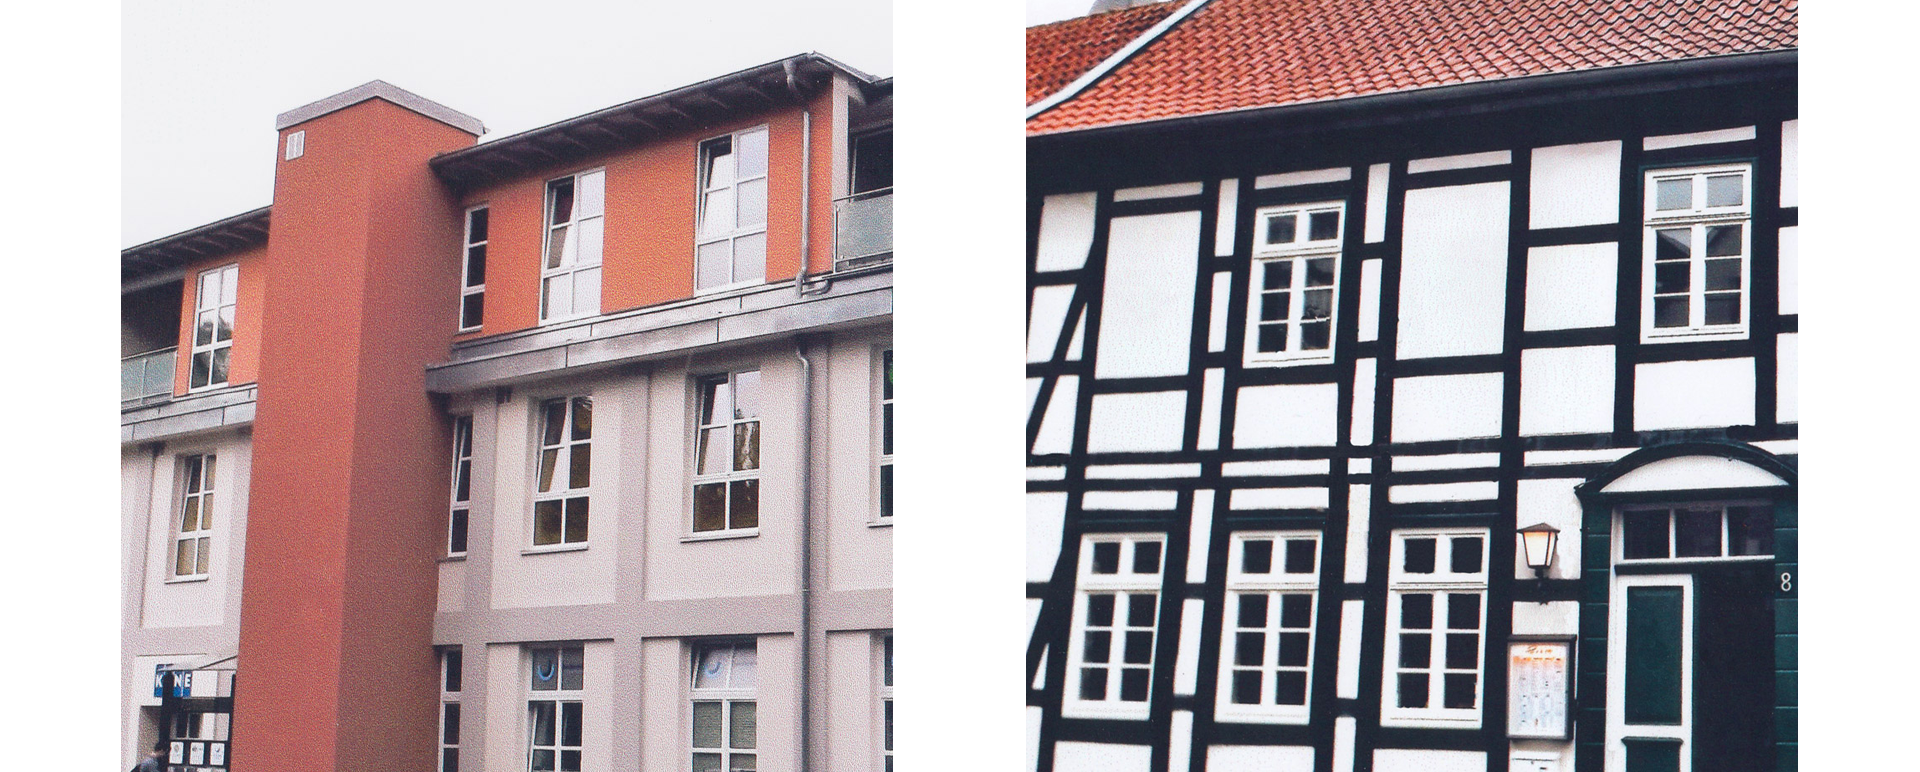 Zwei Bilder mit Außenwand Häuser, links: drei-Stock Reihenhaus, rechts: Fachwerkhaus